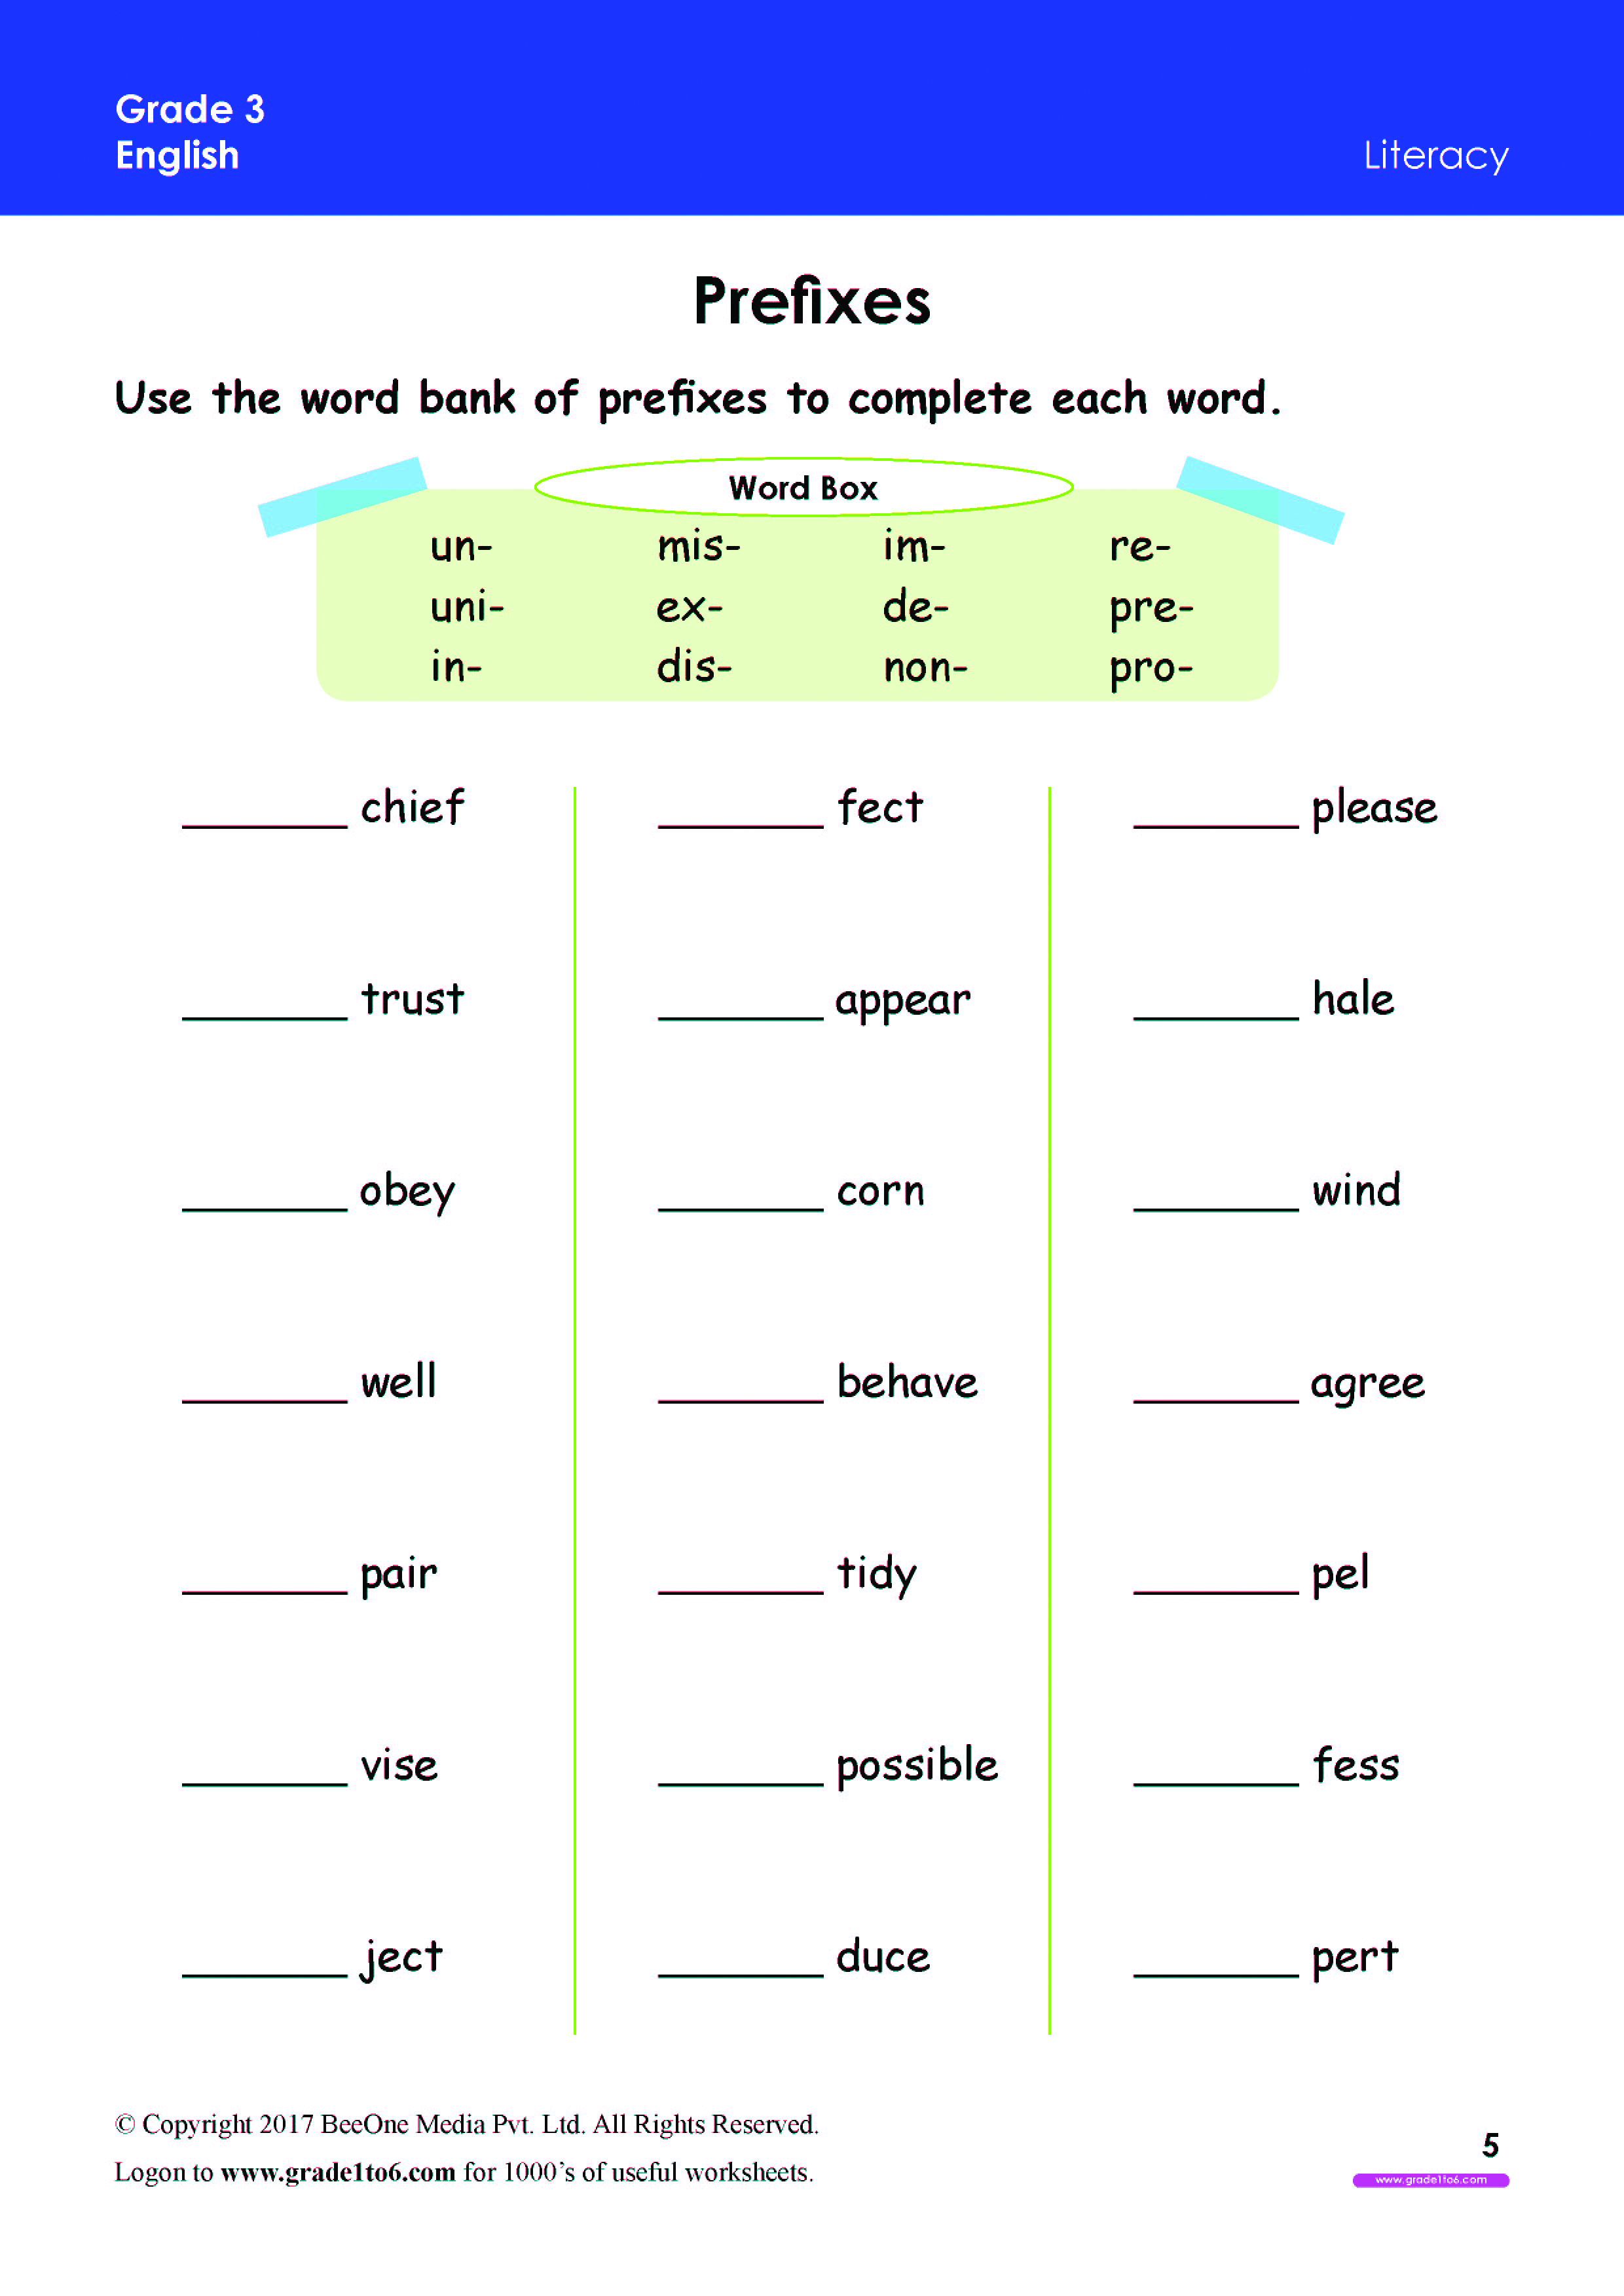 Prefix Worksheets Grade 3|www.grade1to6.com